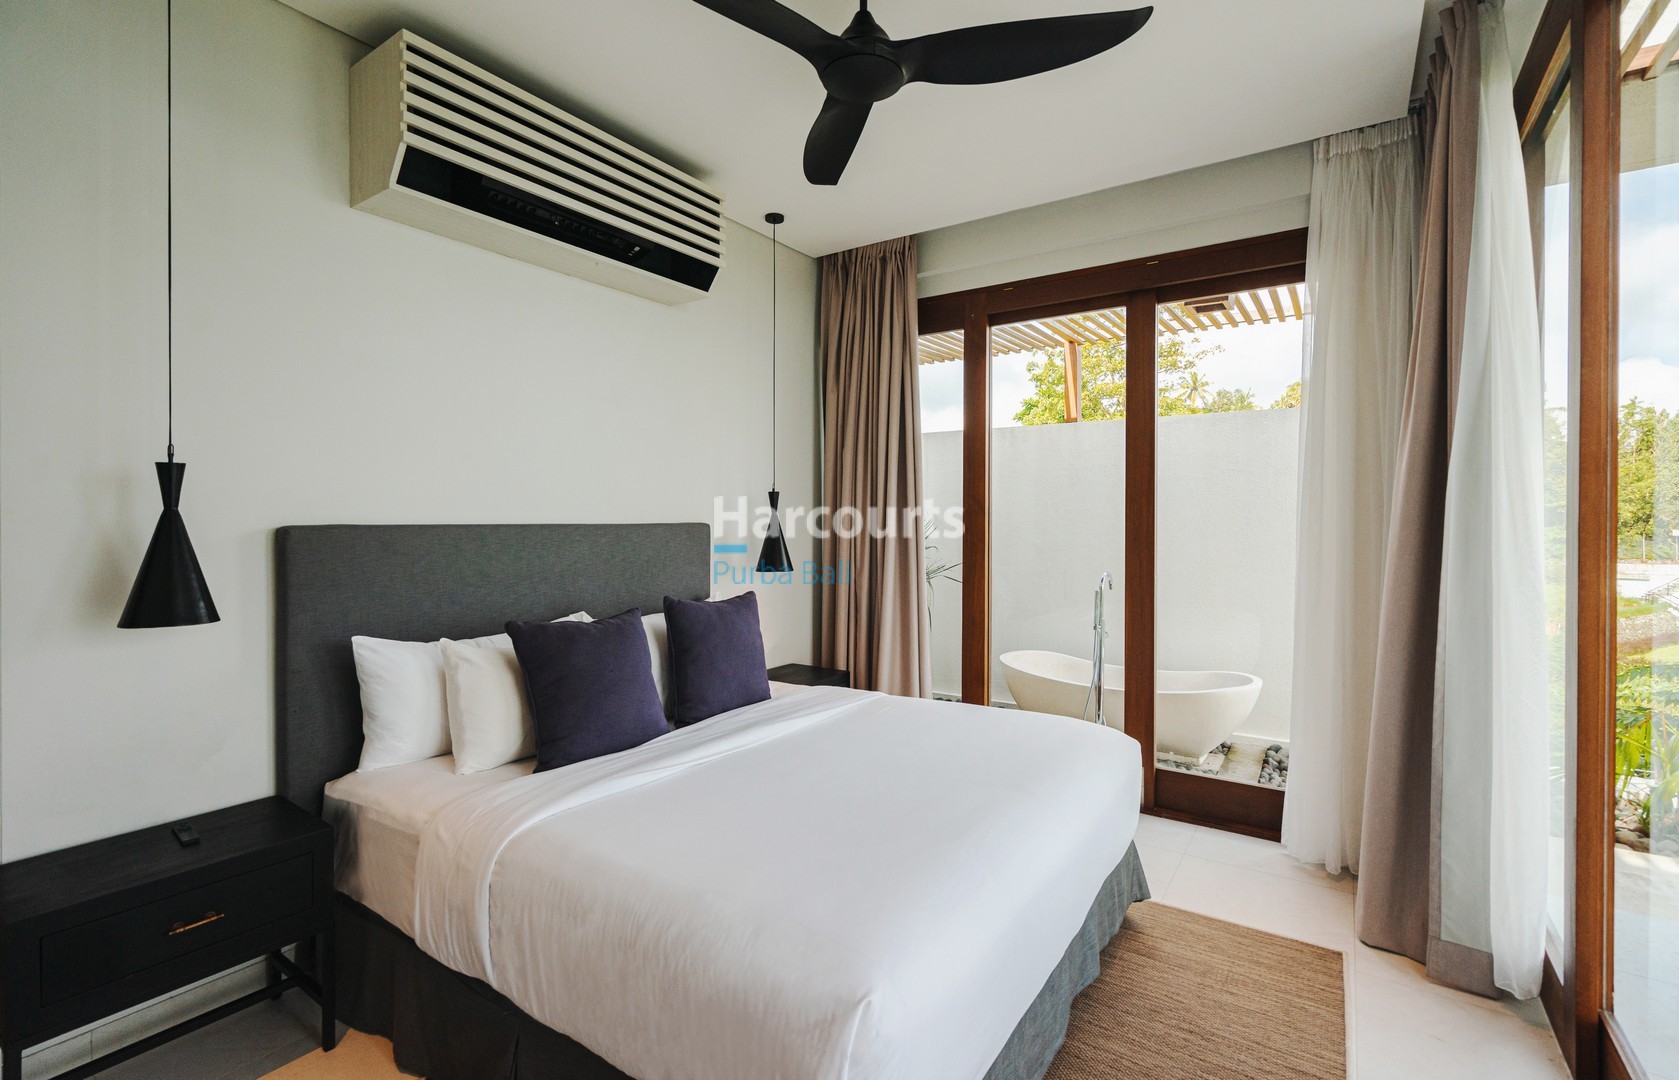 Luxury Lombok 2 Bedroom Villa, Hillside Ocean View